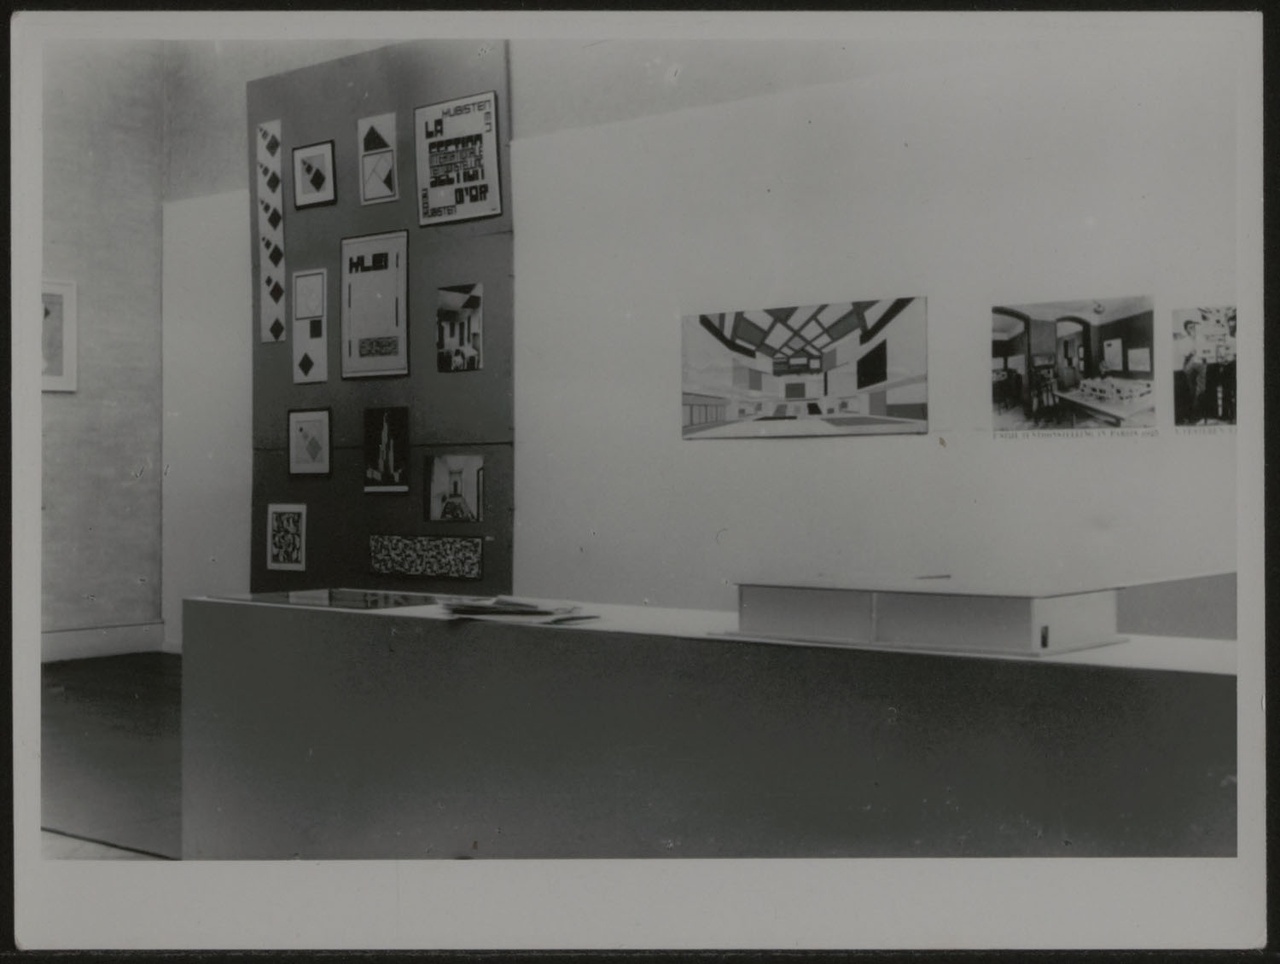 Afbeelding van tentoonstelling De Stijl SMA, 1951, zaal 1, wand Van Eesteren met Hal Universiteit